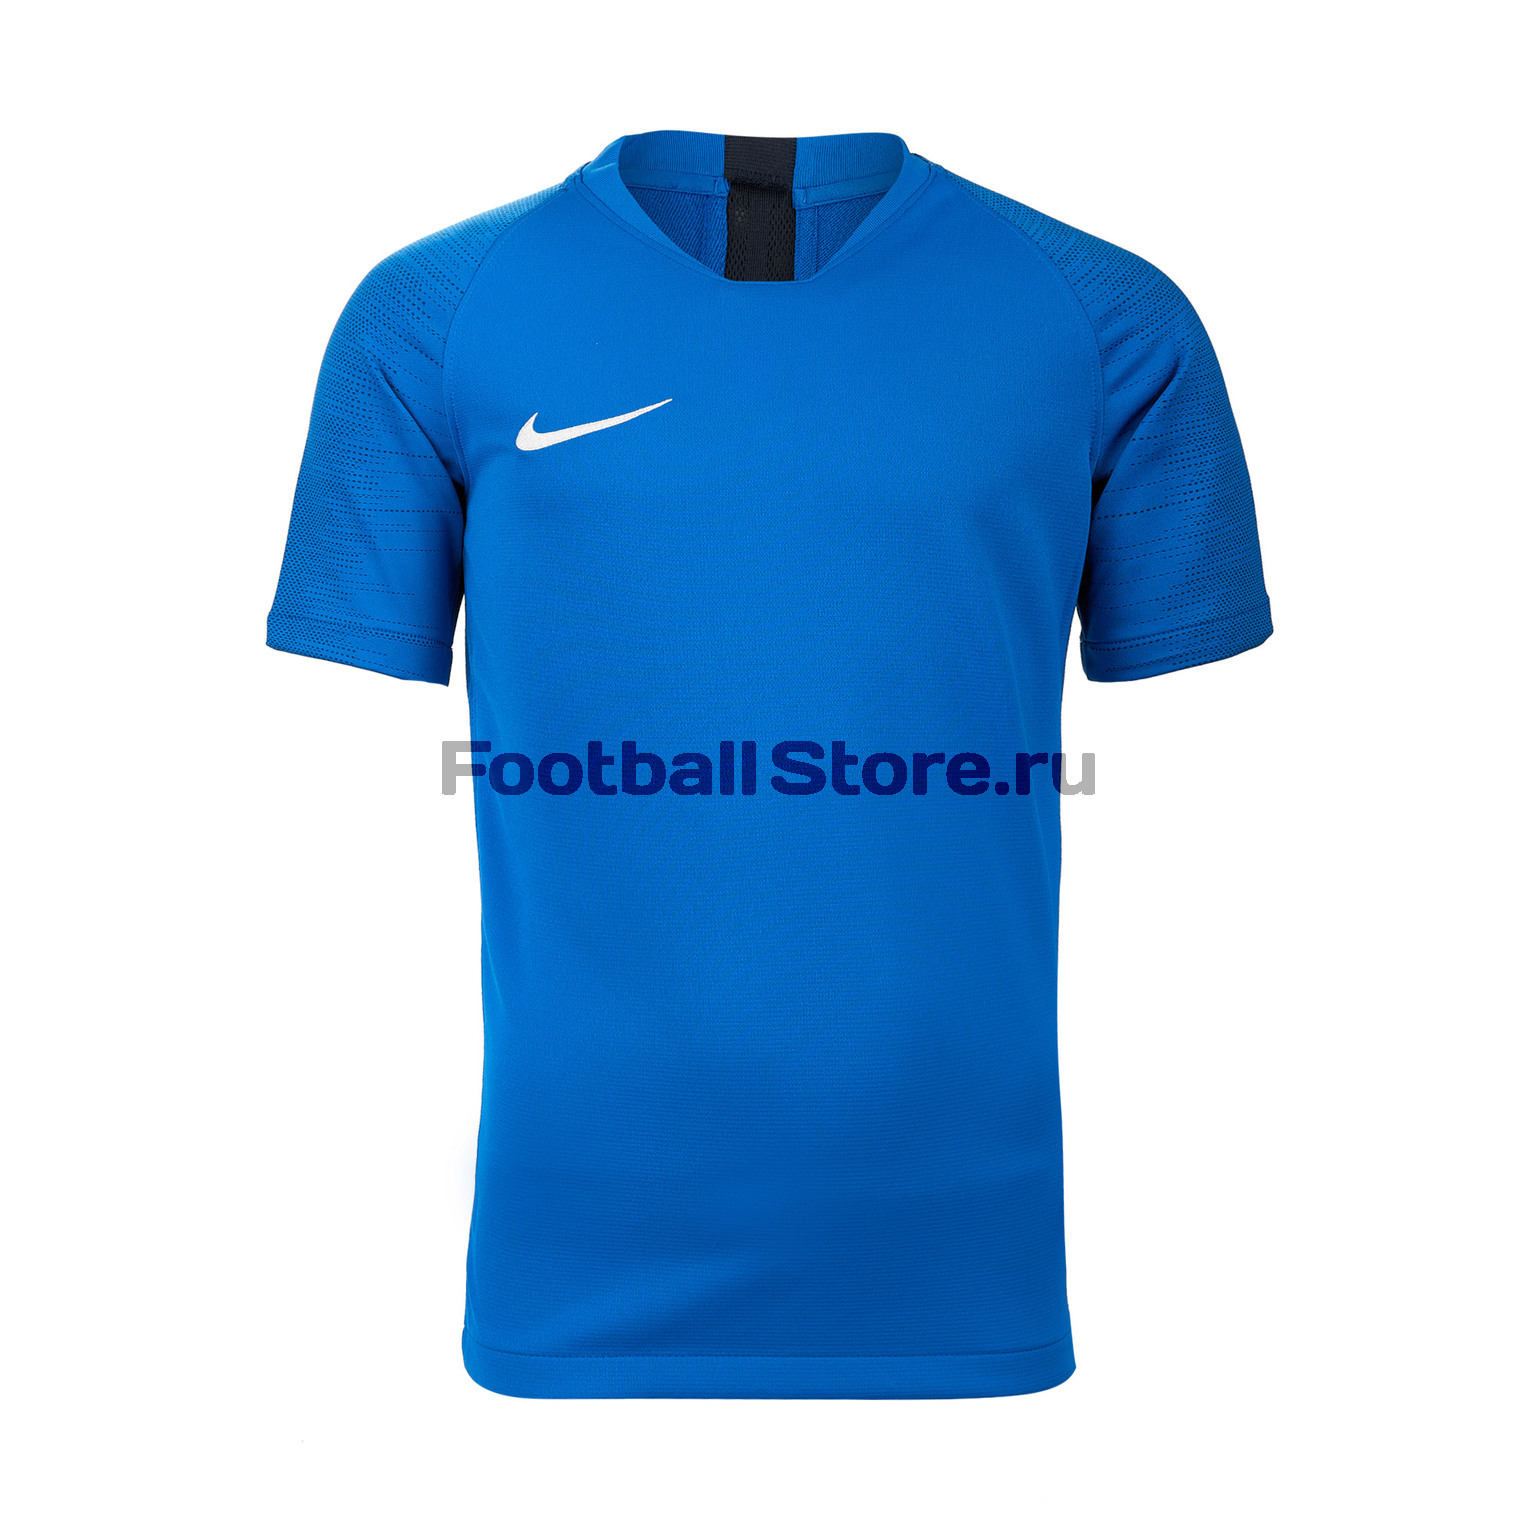 Футболка подростковая Nike Dry Strike SS AJ1027-463